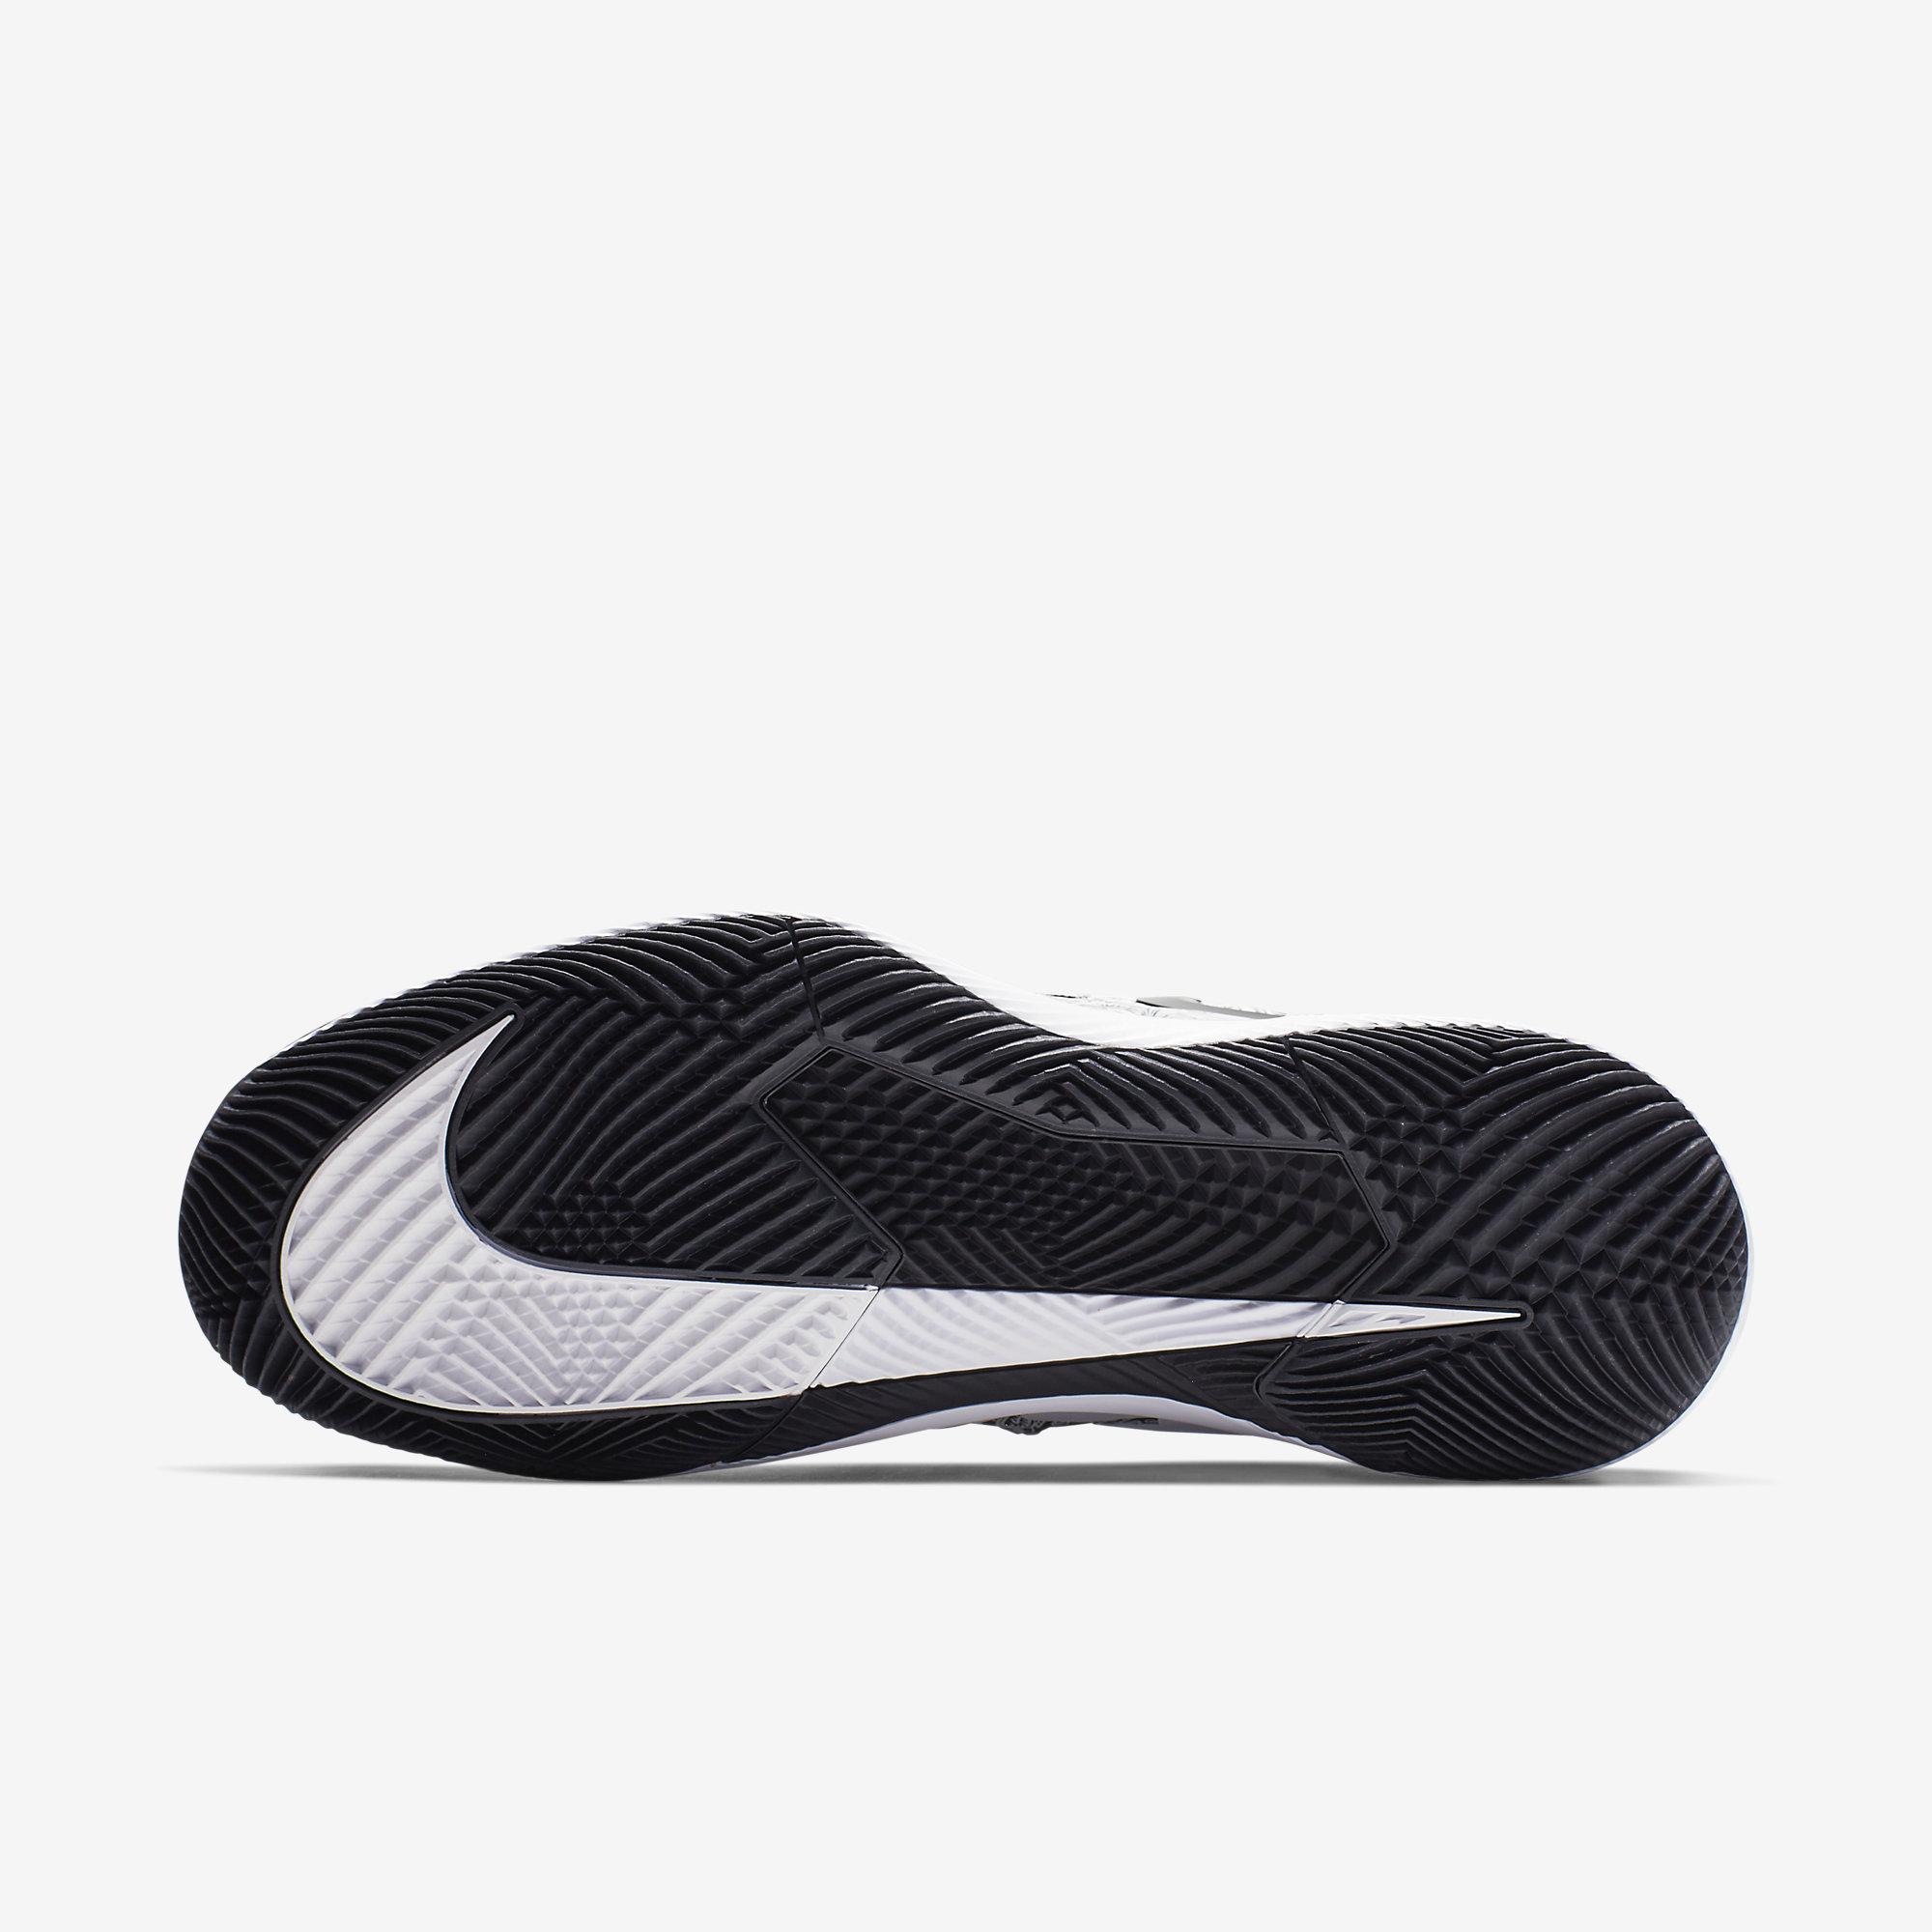 Nike Mens Air Zoom Vapor X Tennis Shoes - White/Black - Tennisnuts.com